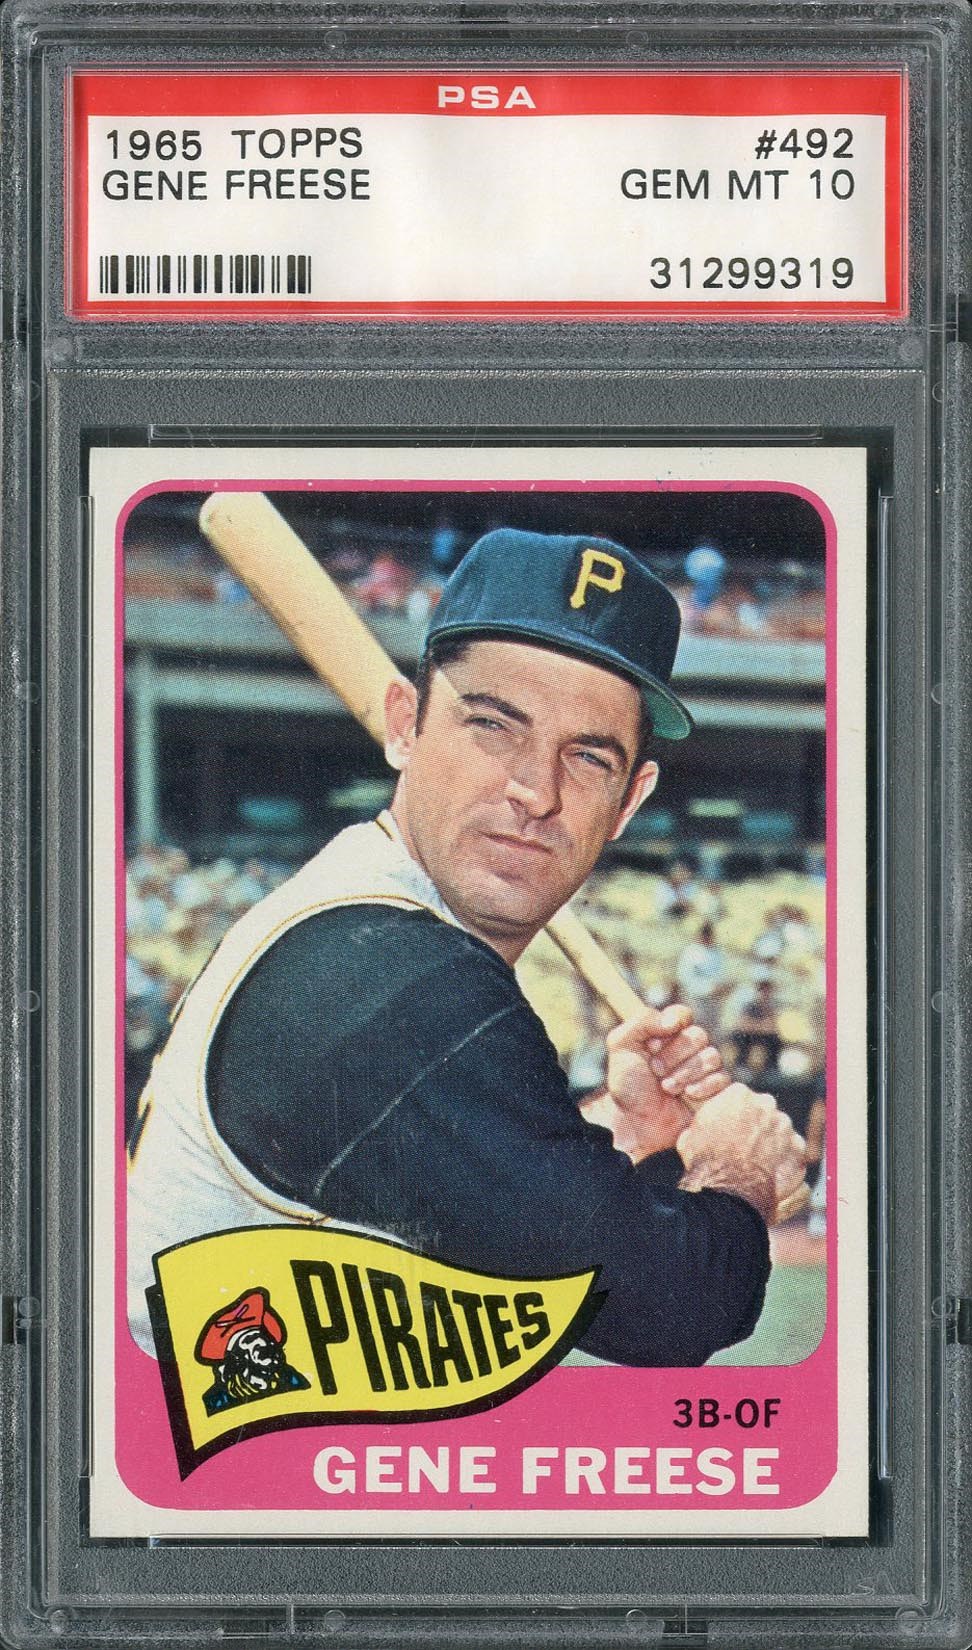 Baseball and Trading Cards - 1965 Topps Gene Freese #492 PSA GEM MT 10